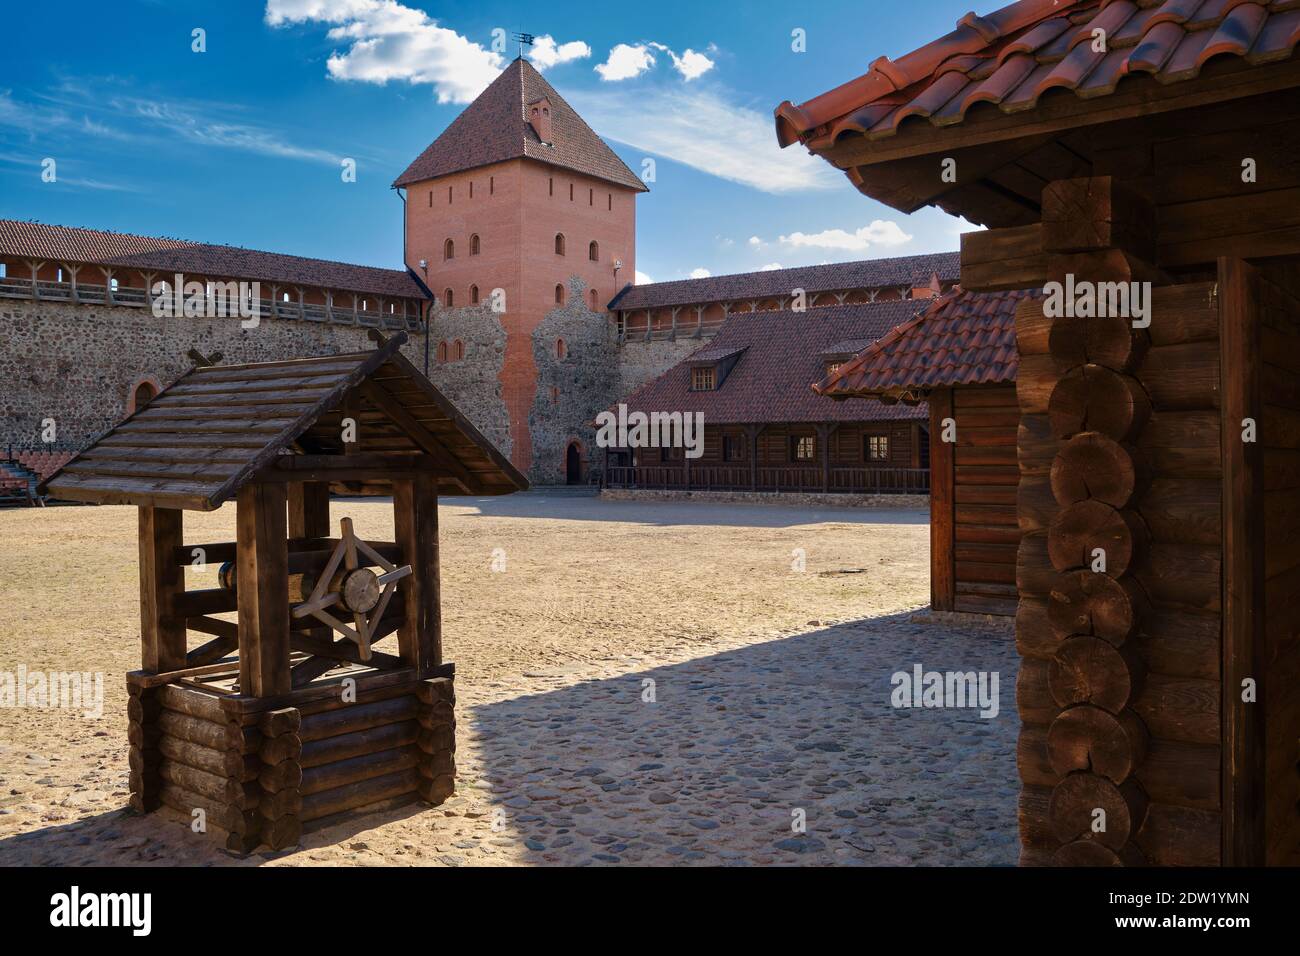 Ancien puits en bois et site touristique - Château de Lida, région de Grodno, Biélorussie. Banque D'Images